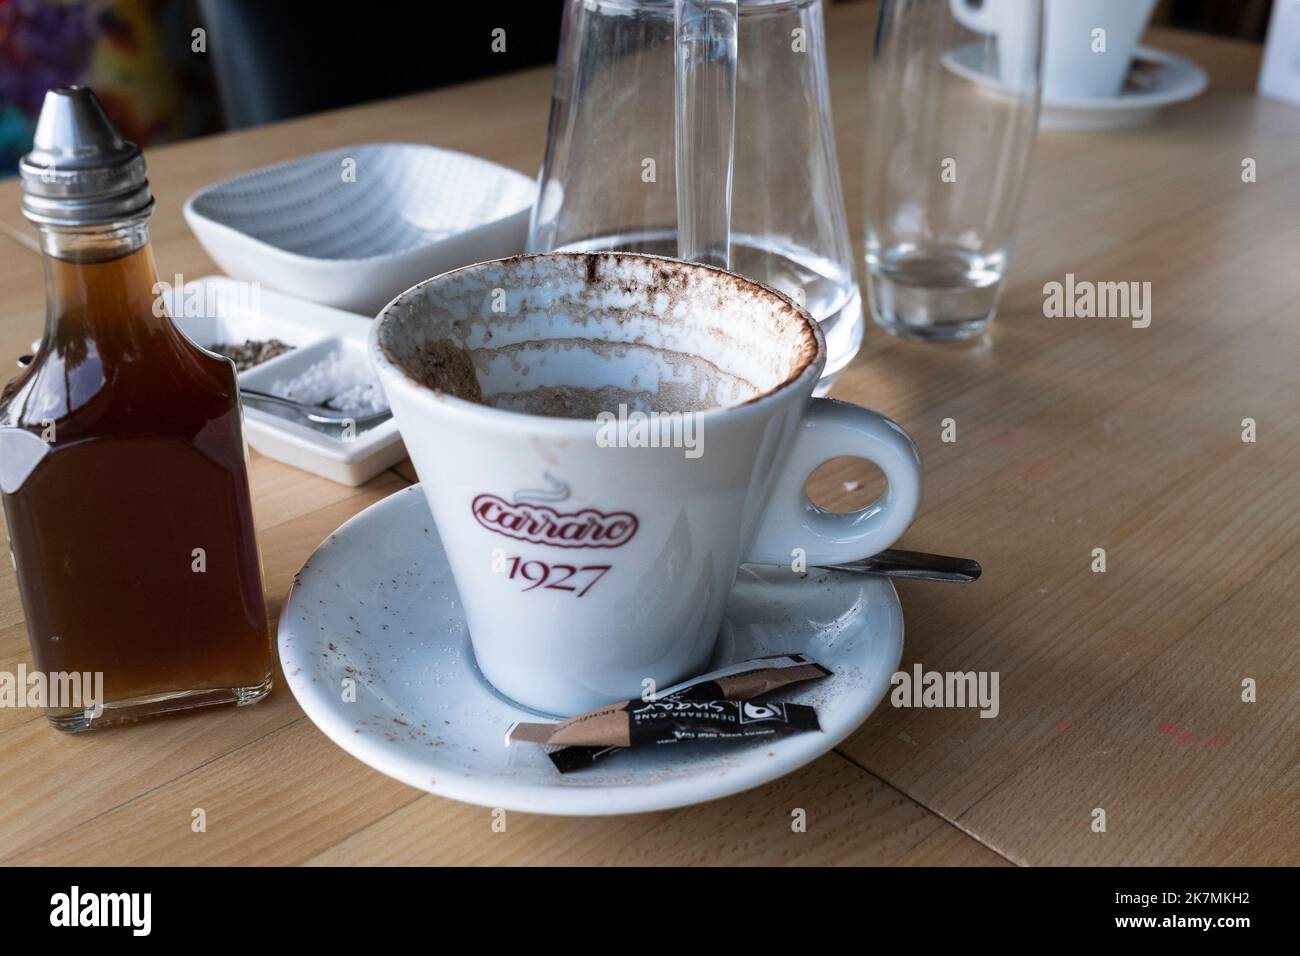 Eine gebrauchte leere Kaffeetasse auf einem Restaurantcafé-Tisch. Stockfoto